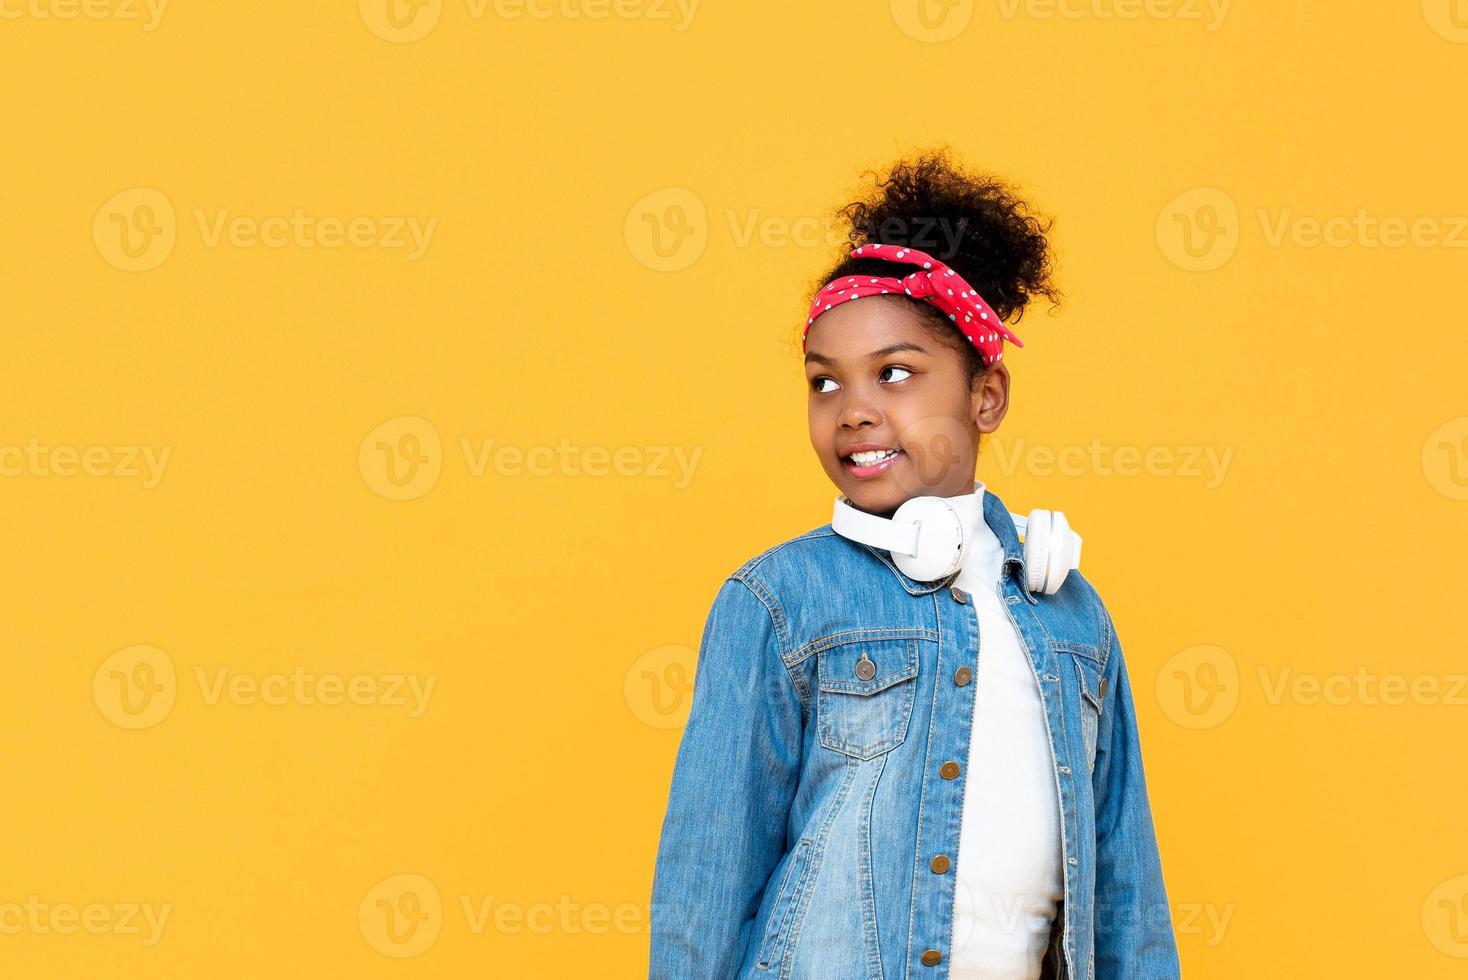 leende moderiktig blandad afrikansk flicka tittar på kopia utrymme åt sidan studiobild isolerad på färgglad gul bakgrund foto